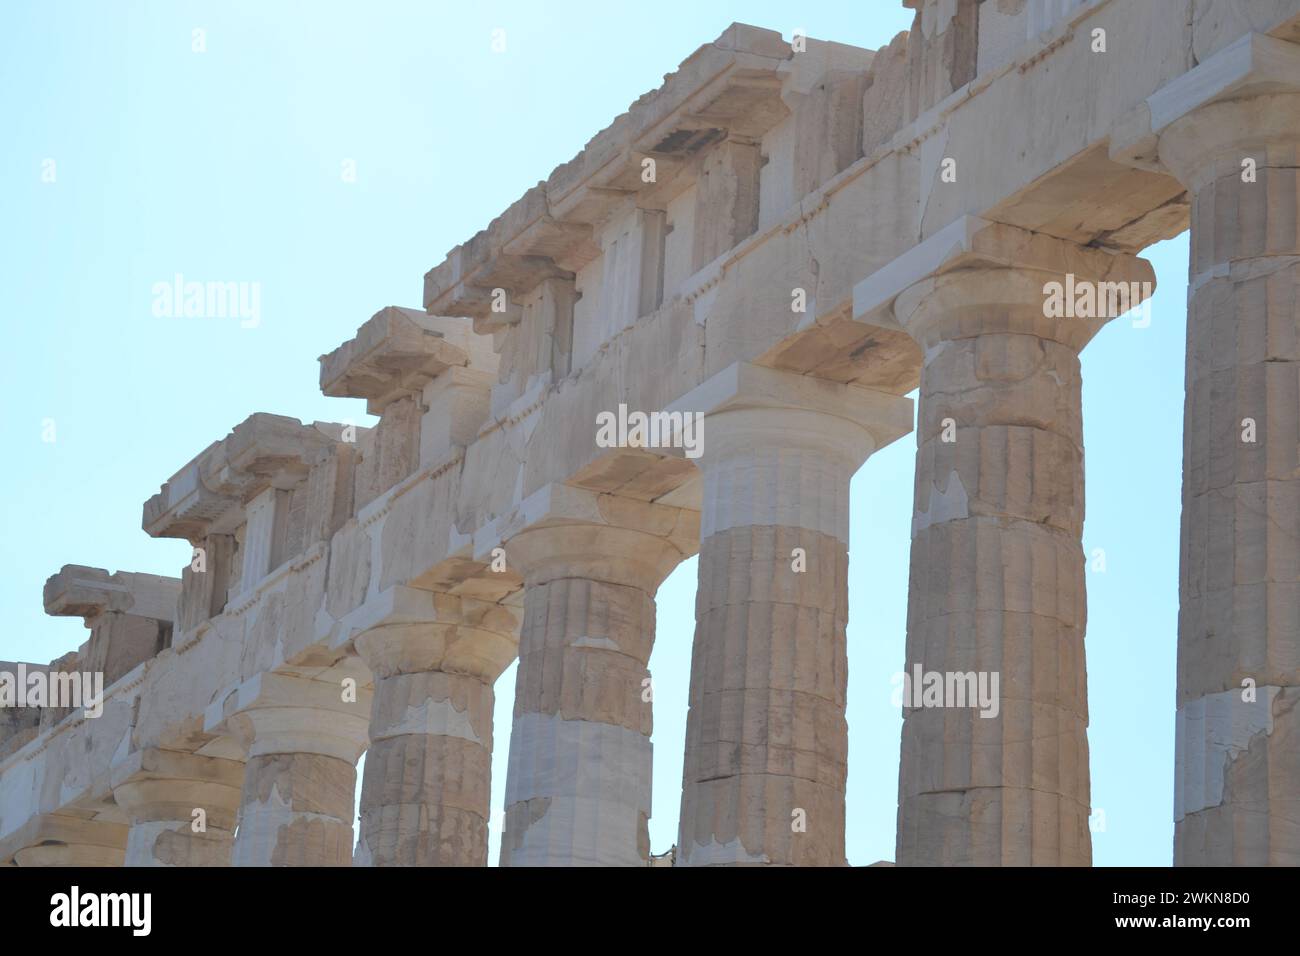 Athènes, Grèce ; découvrir la civilisation antique à travers l'objectif de mon appareil photo. Petits détails dans la magnifique culture grecque Banque D'Images